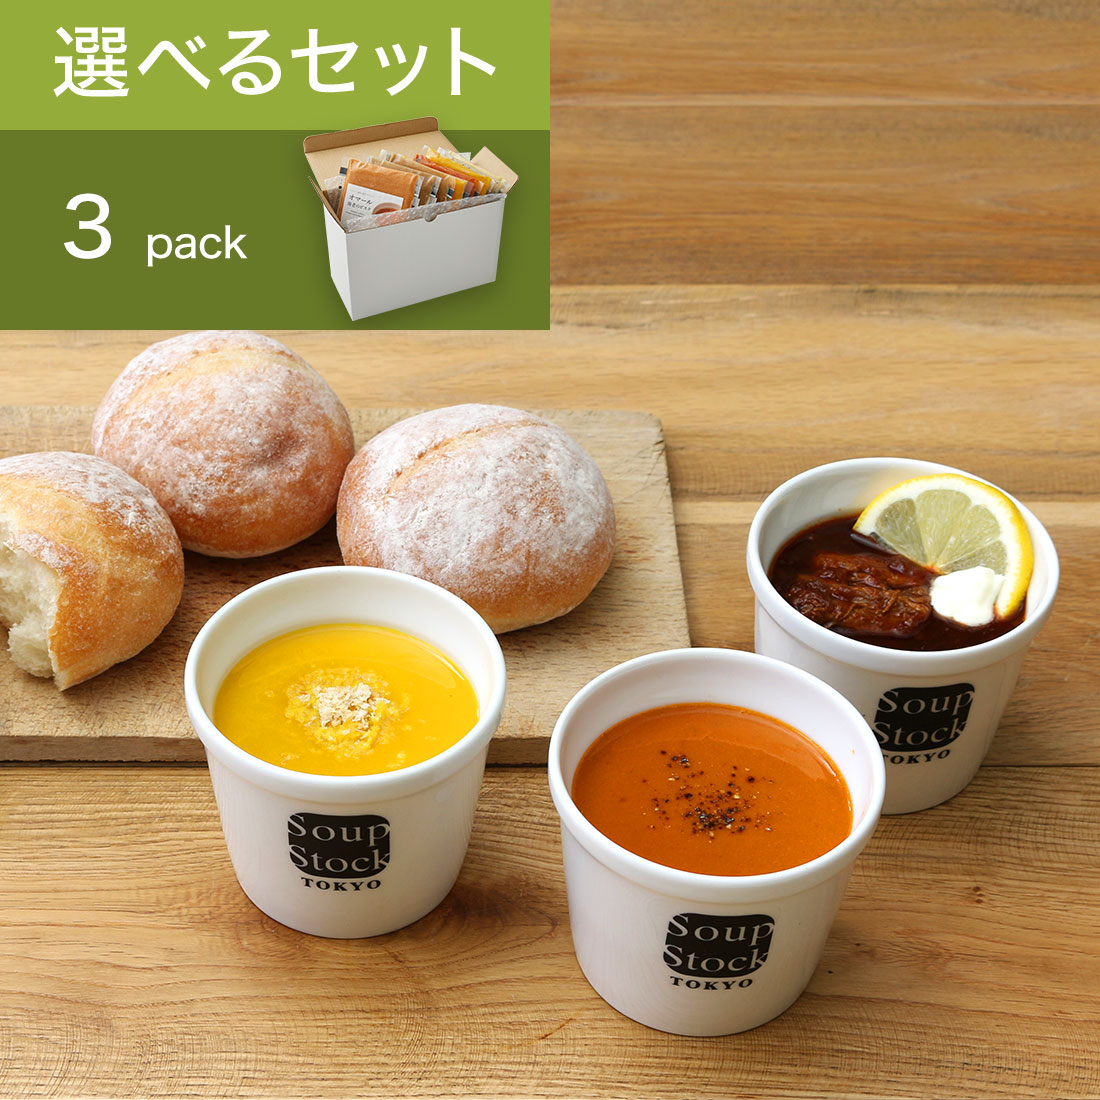 スープストックトーキョー 3つのパンとスープセット【180g】 / カジュアルボックス